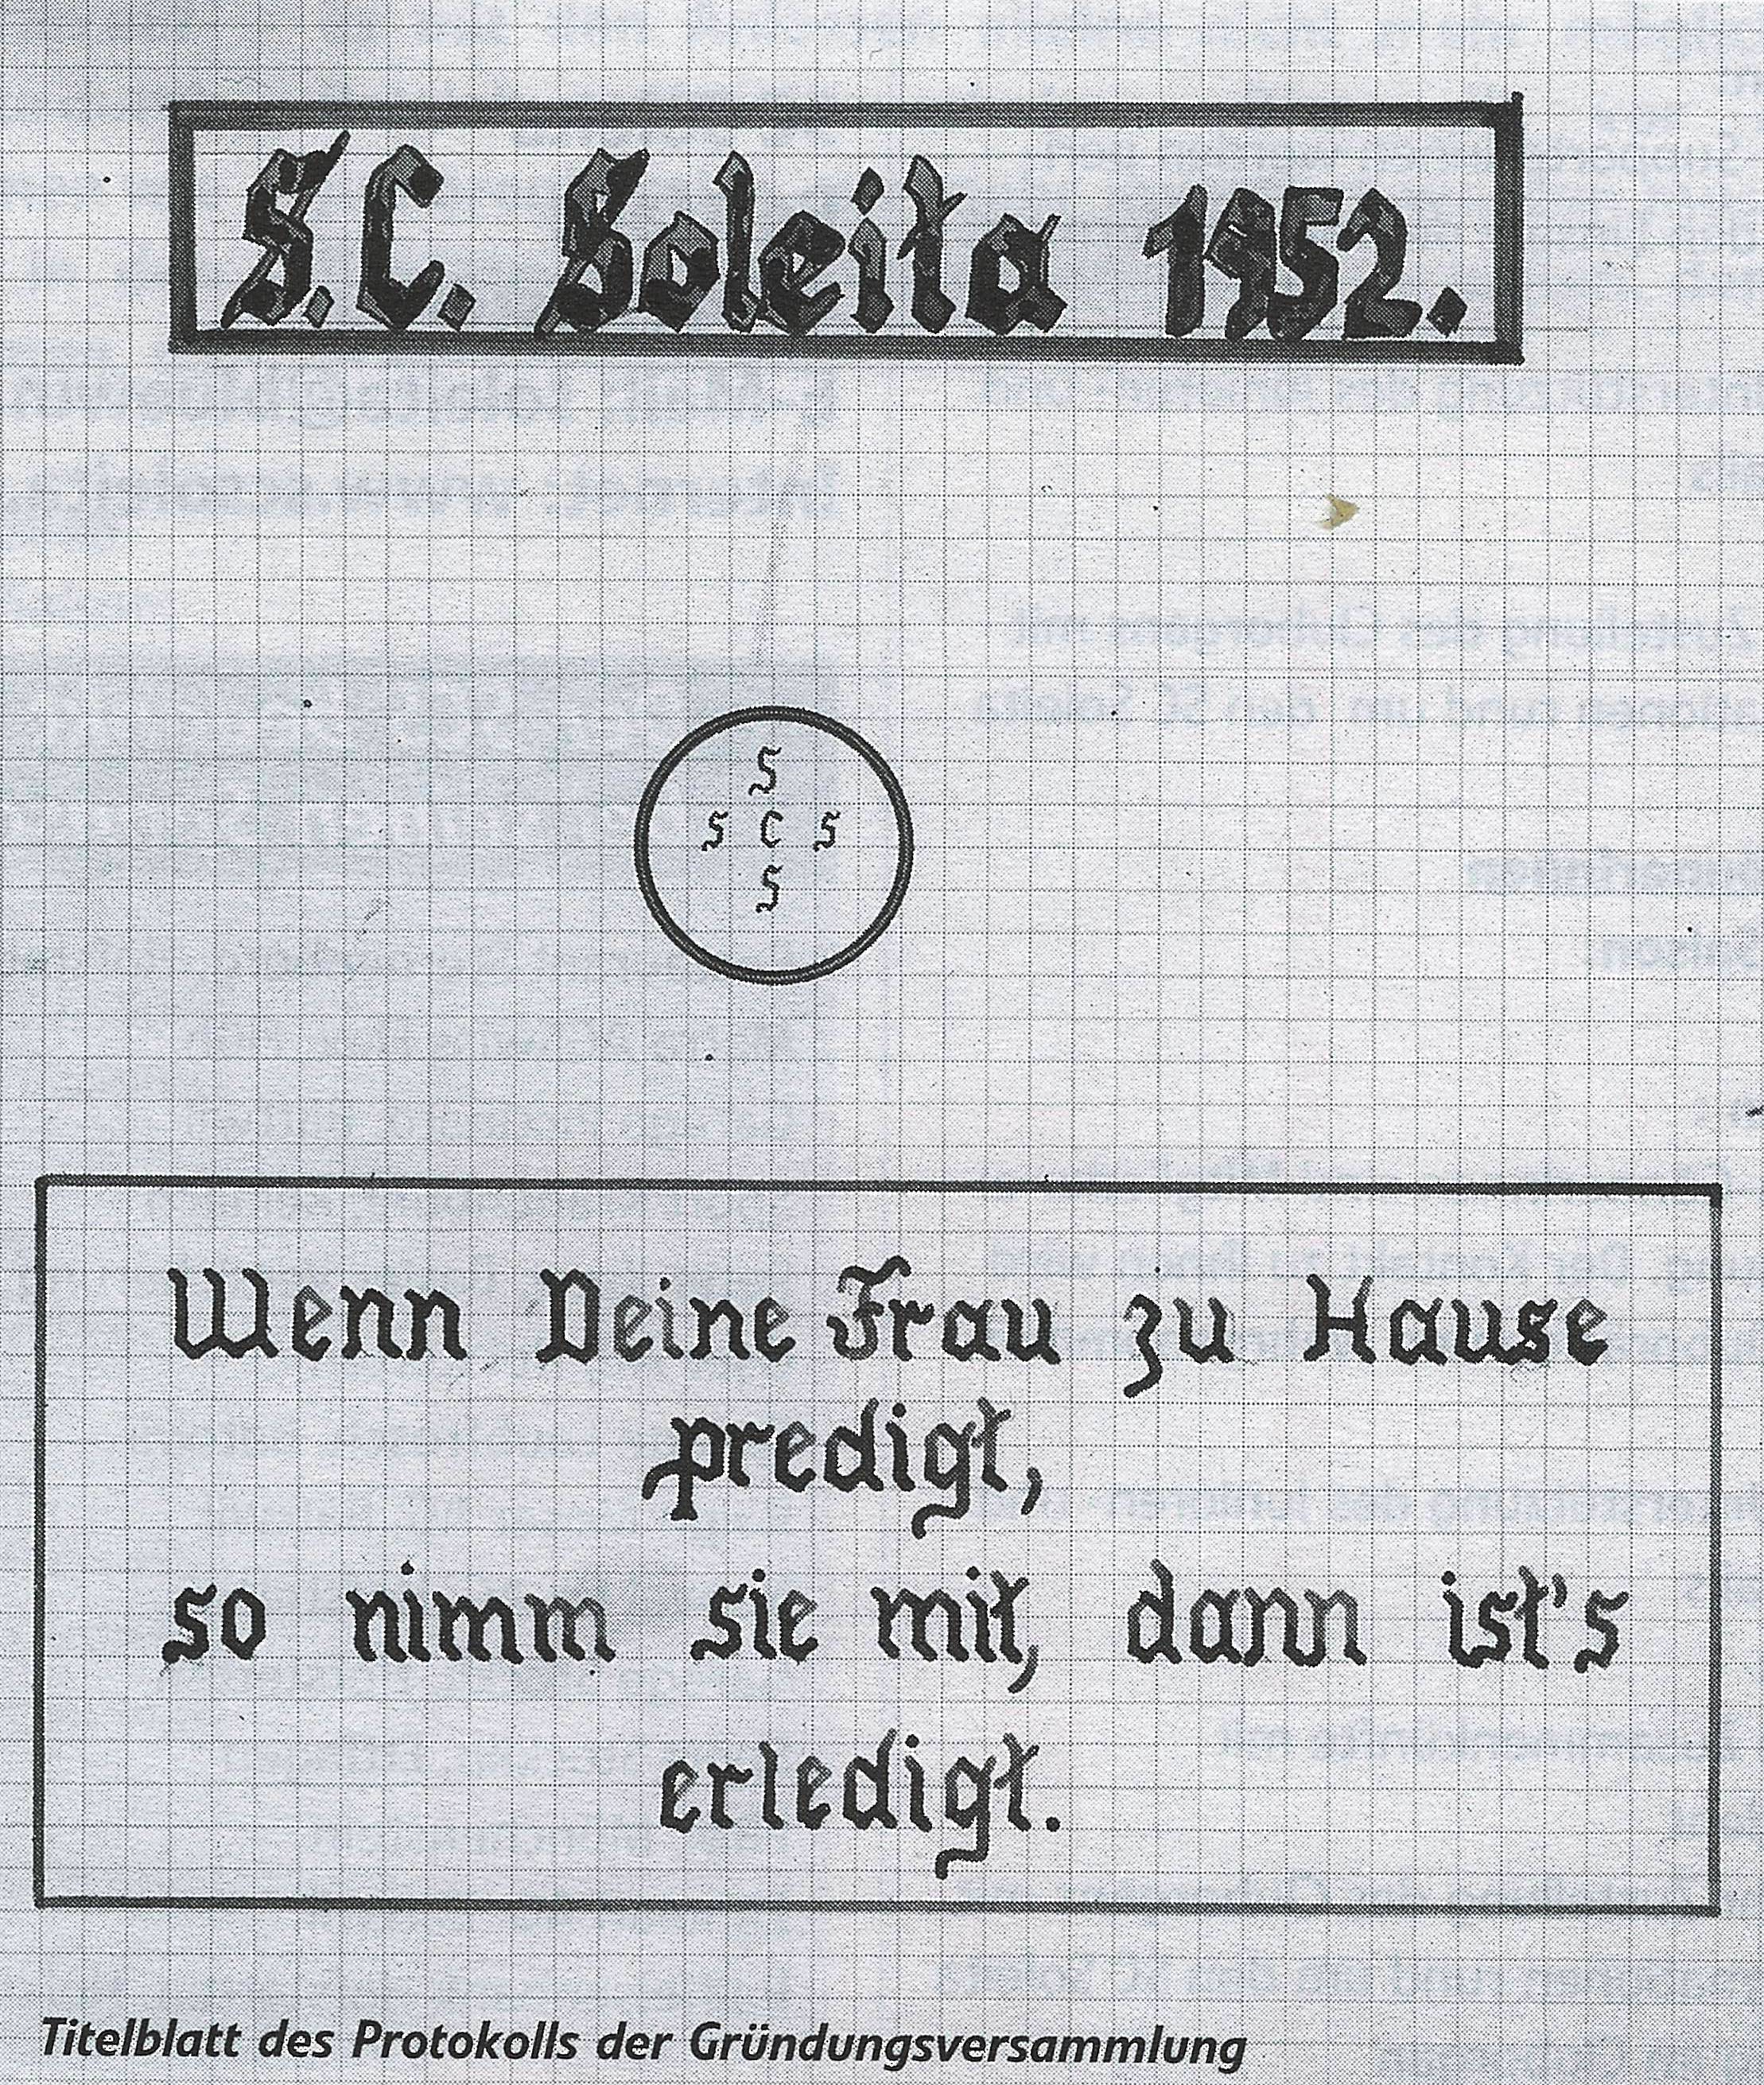 Das Titelblatt des Gründungsprotokolls des SC Soleita.